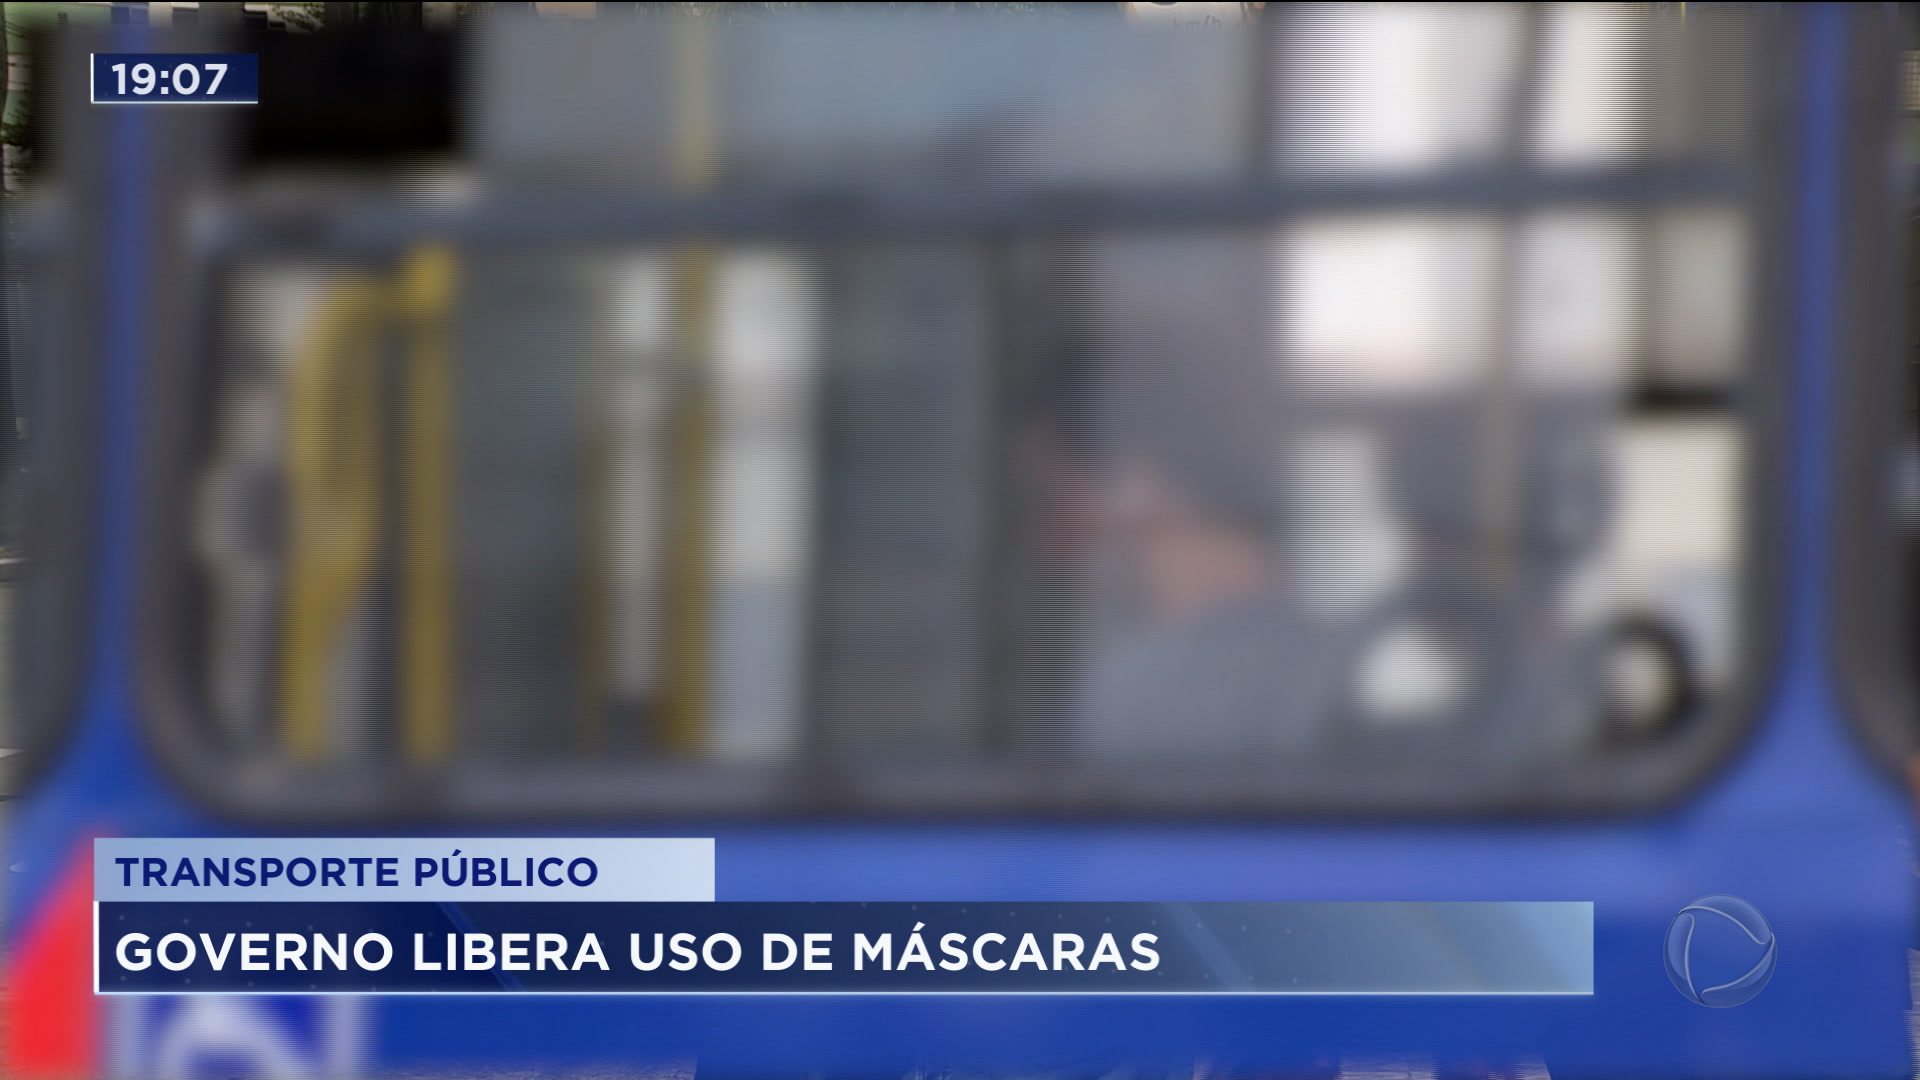 Vídeo: Governo do Estado de São Paulo libera máscaras no transporte público.